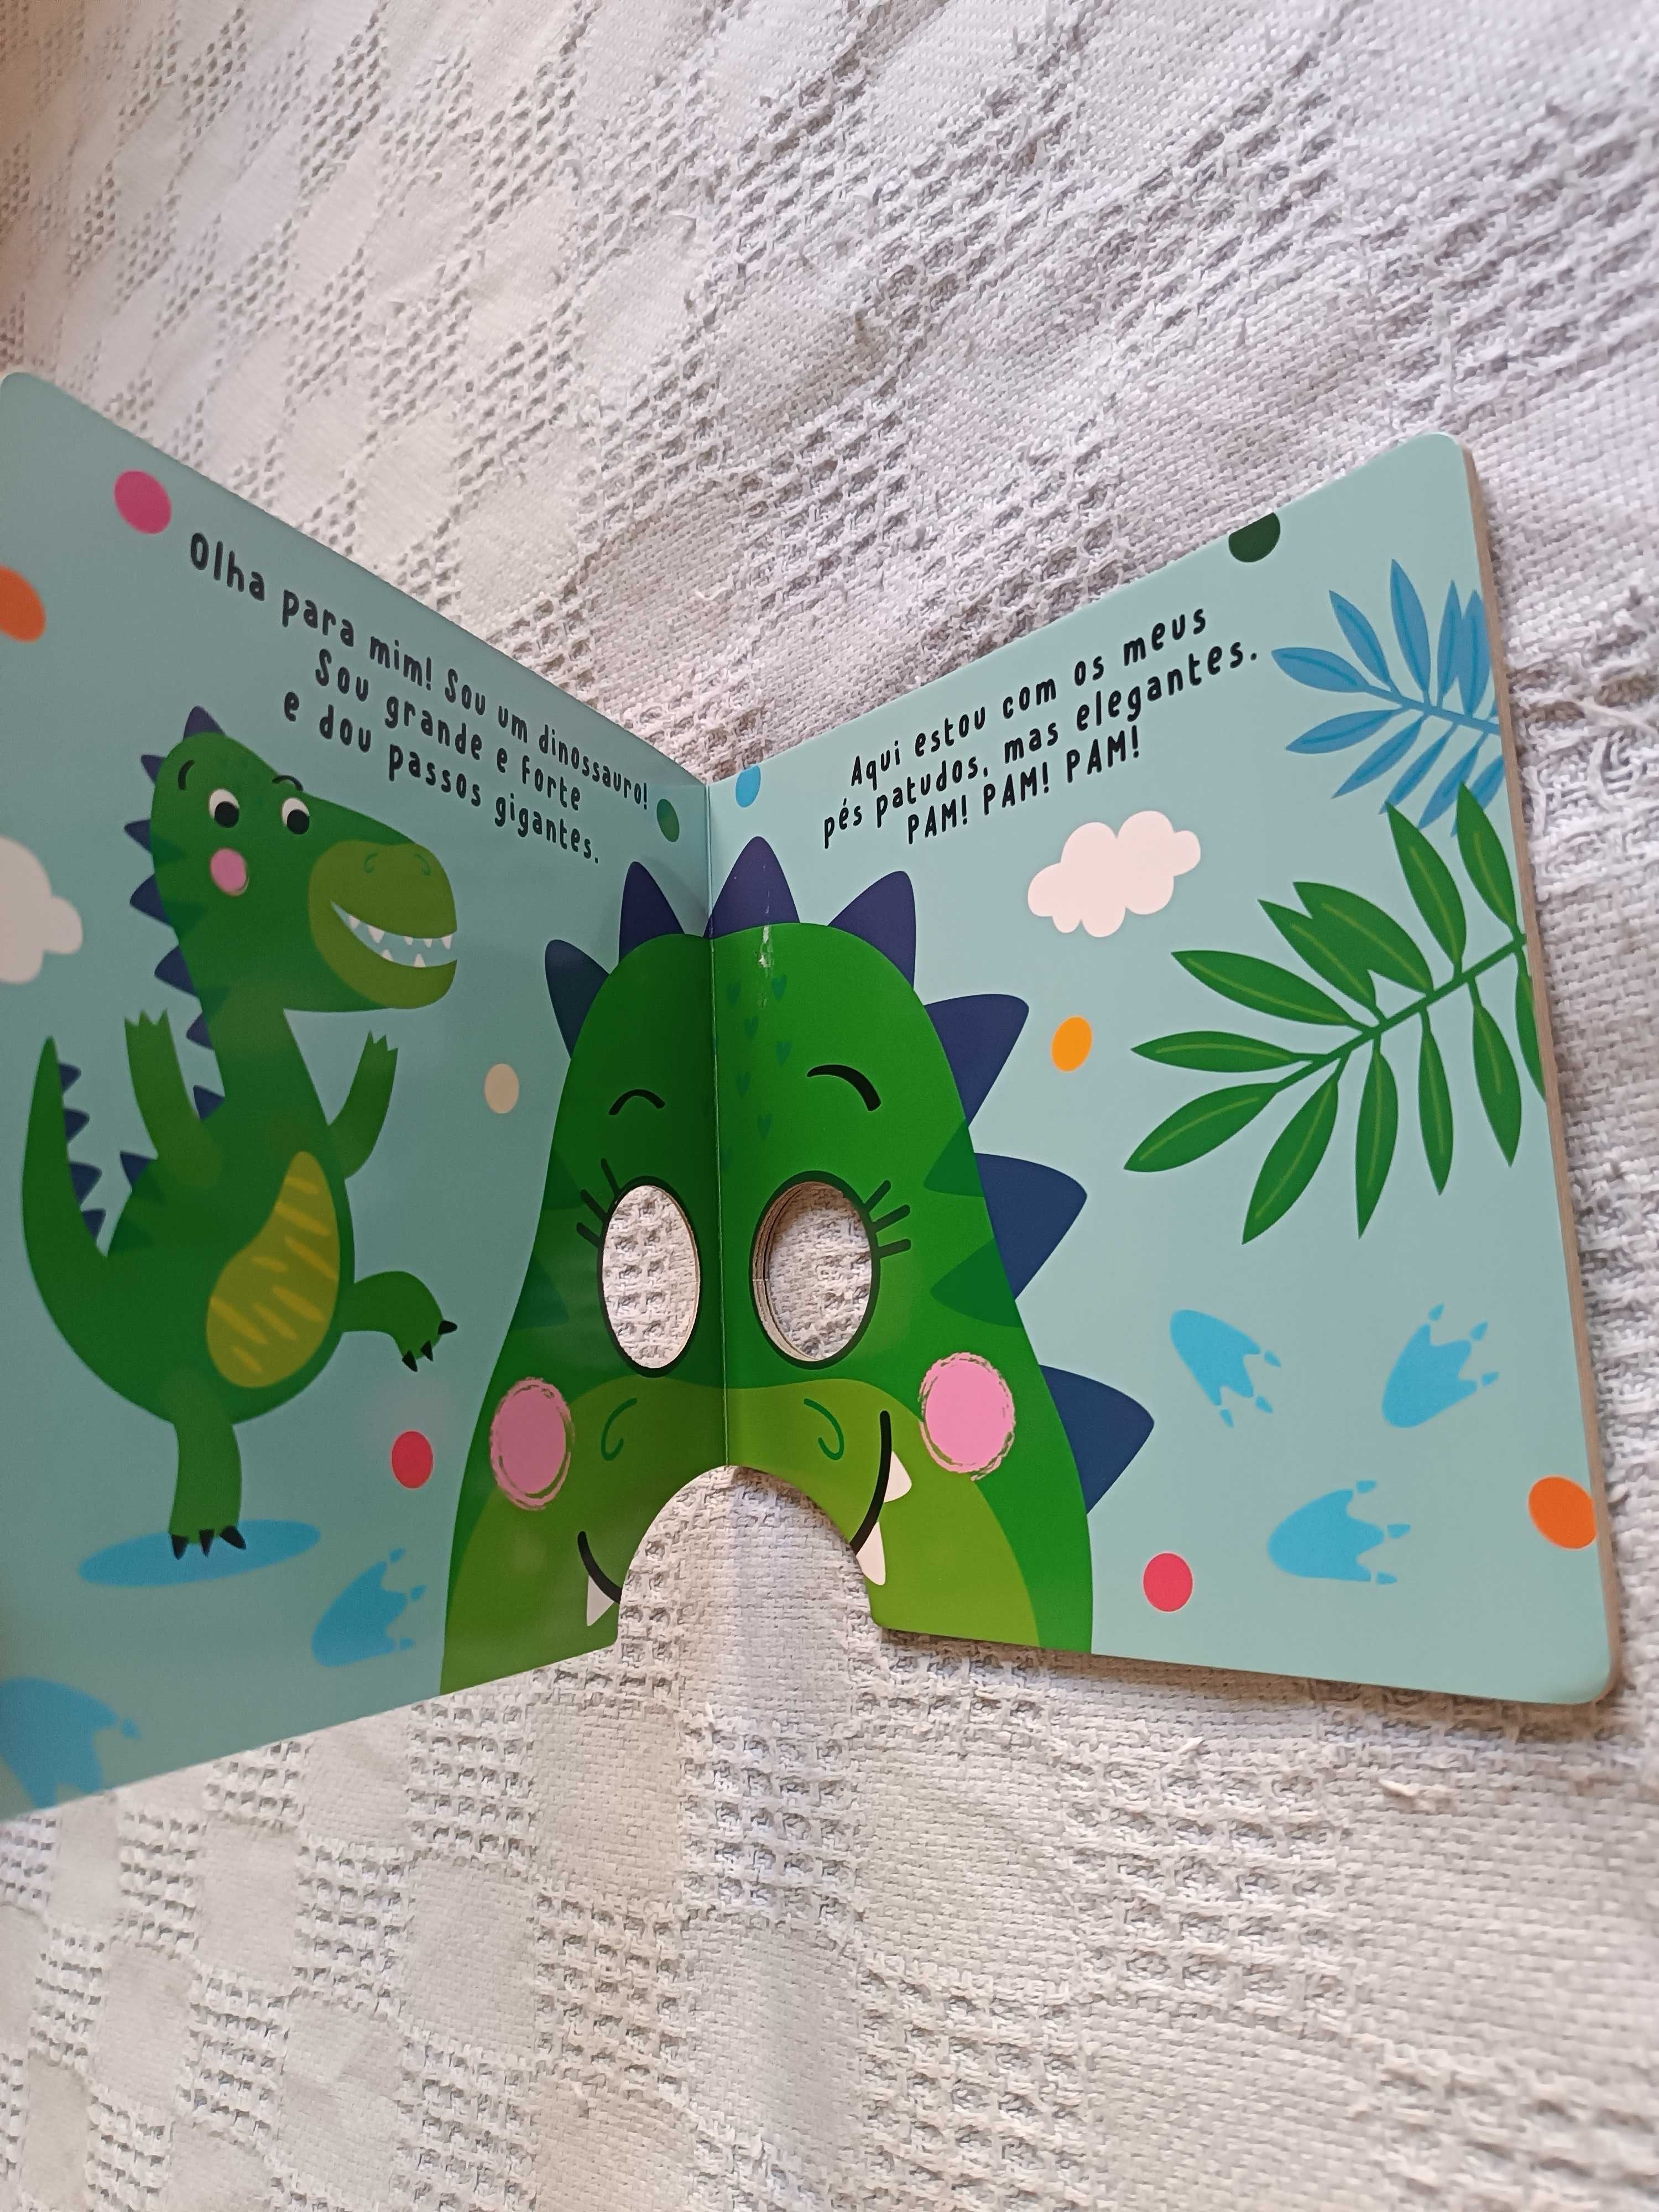 Livro novo com máscara de dinossauro